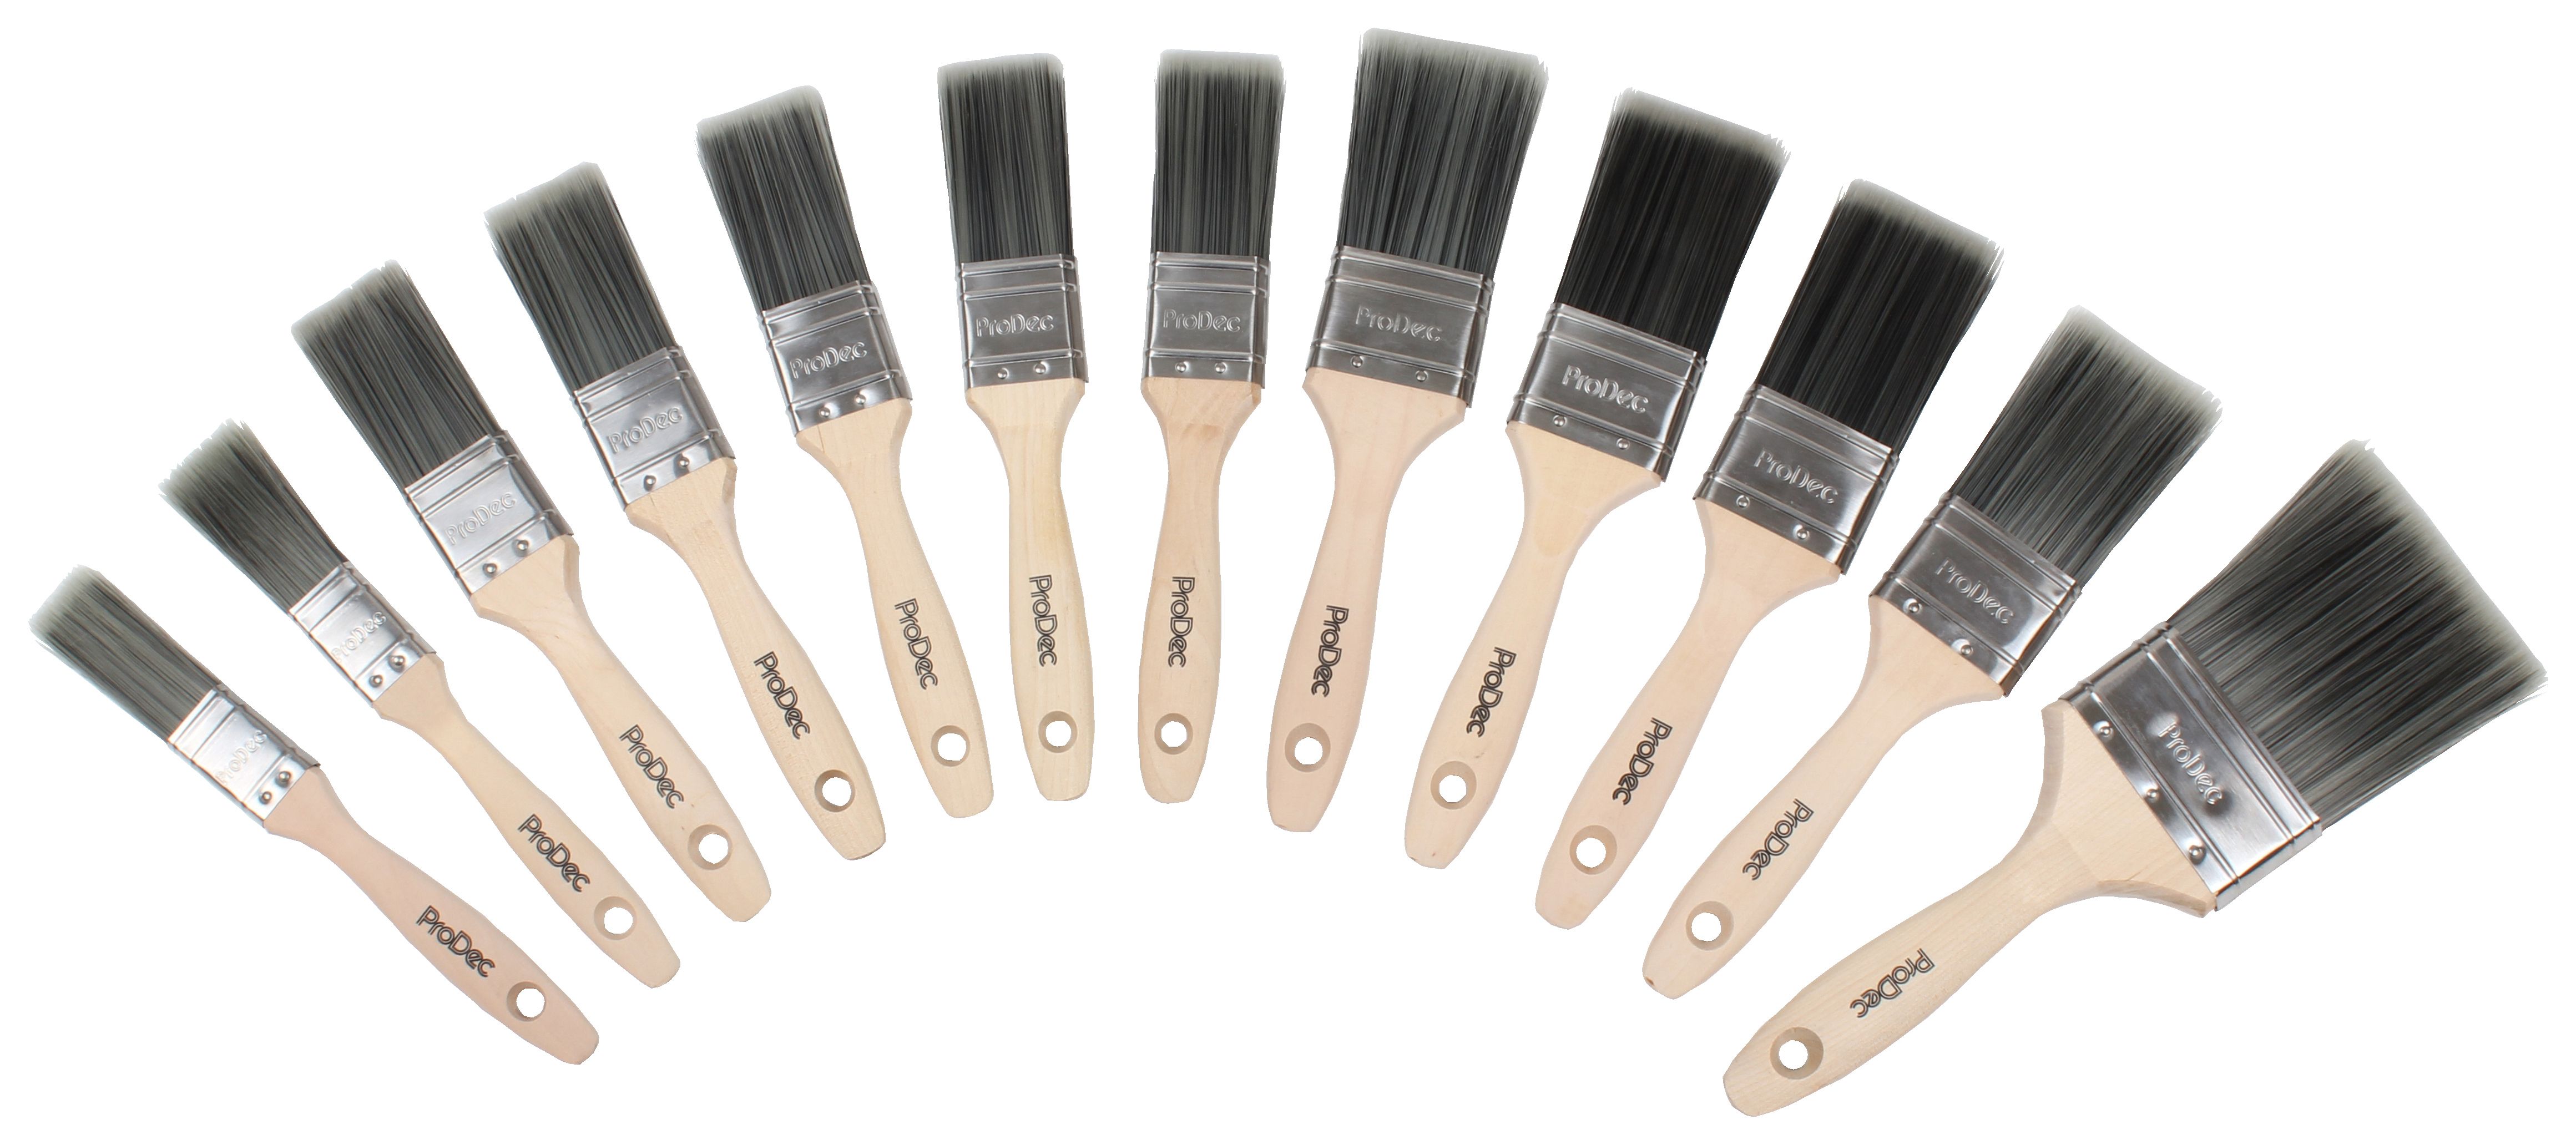 ProDec Decorators Dozen Paint Brush Set - Pack of 12